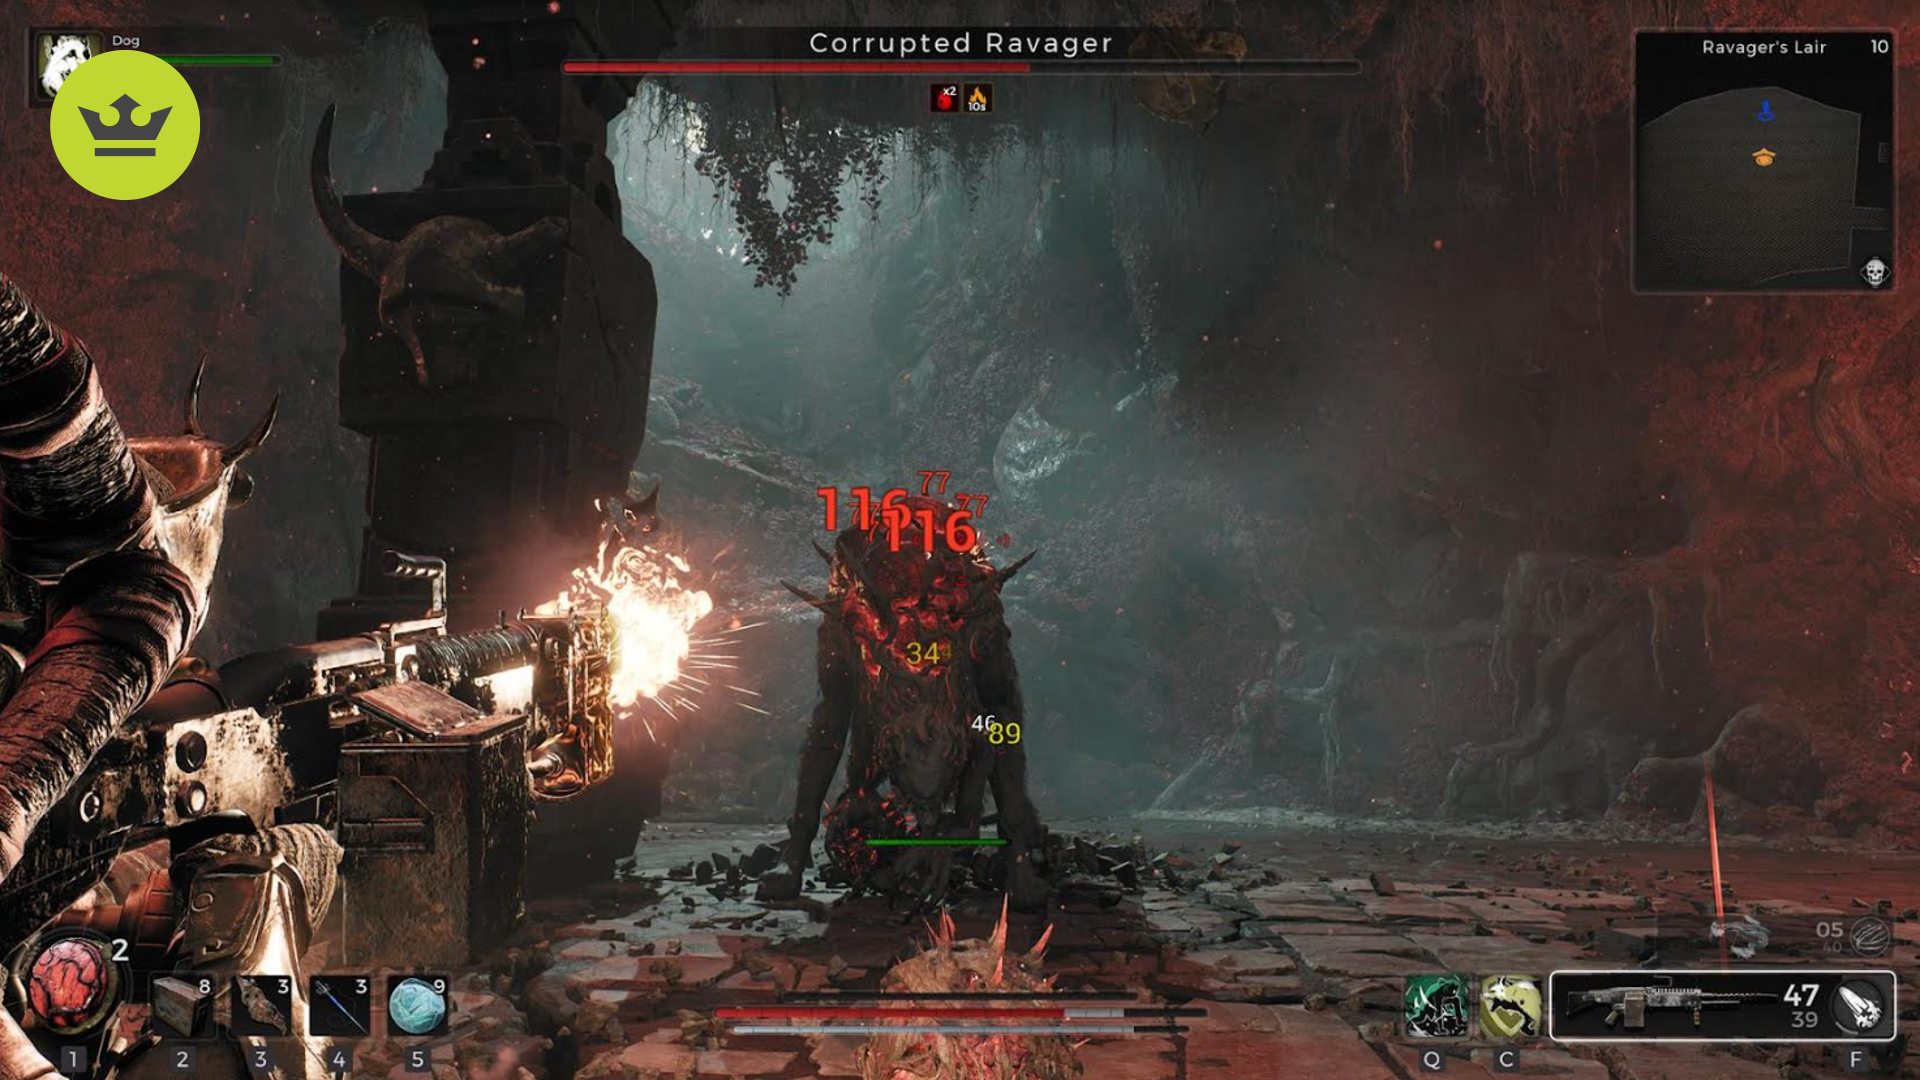 レムナント 2 ウォークスルー: プレイヤーが Corrupted Ravager と戦っているのが見られます